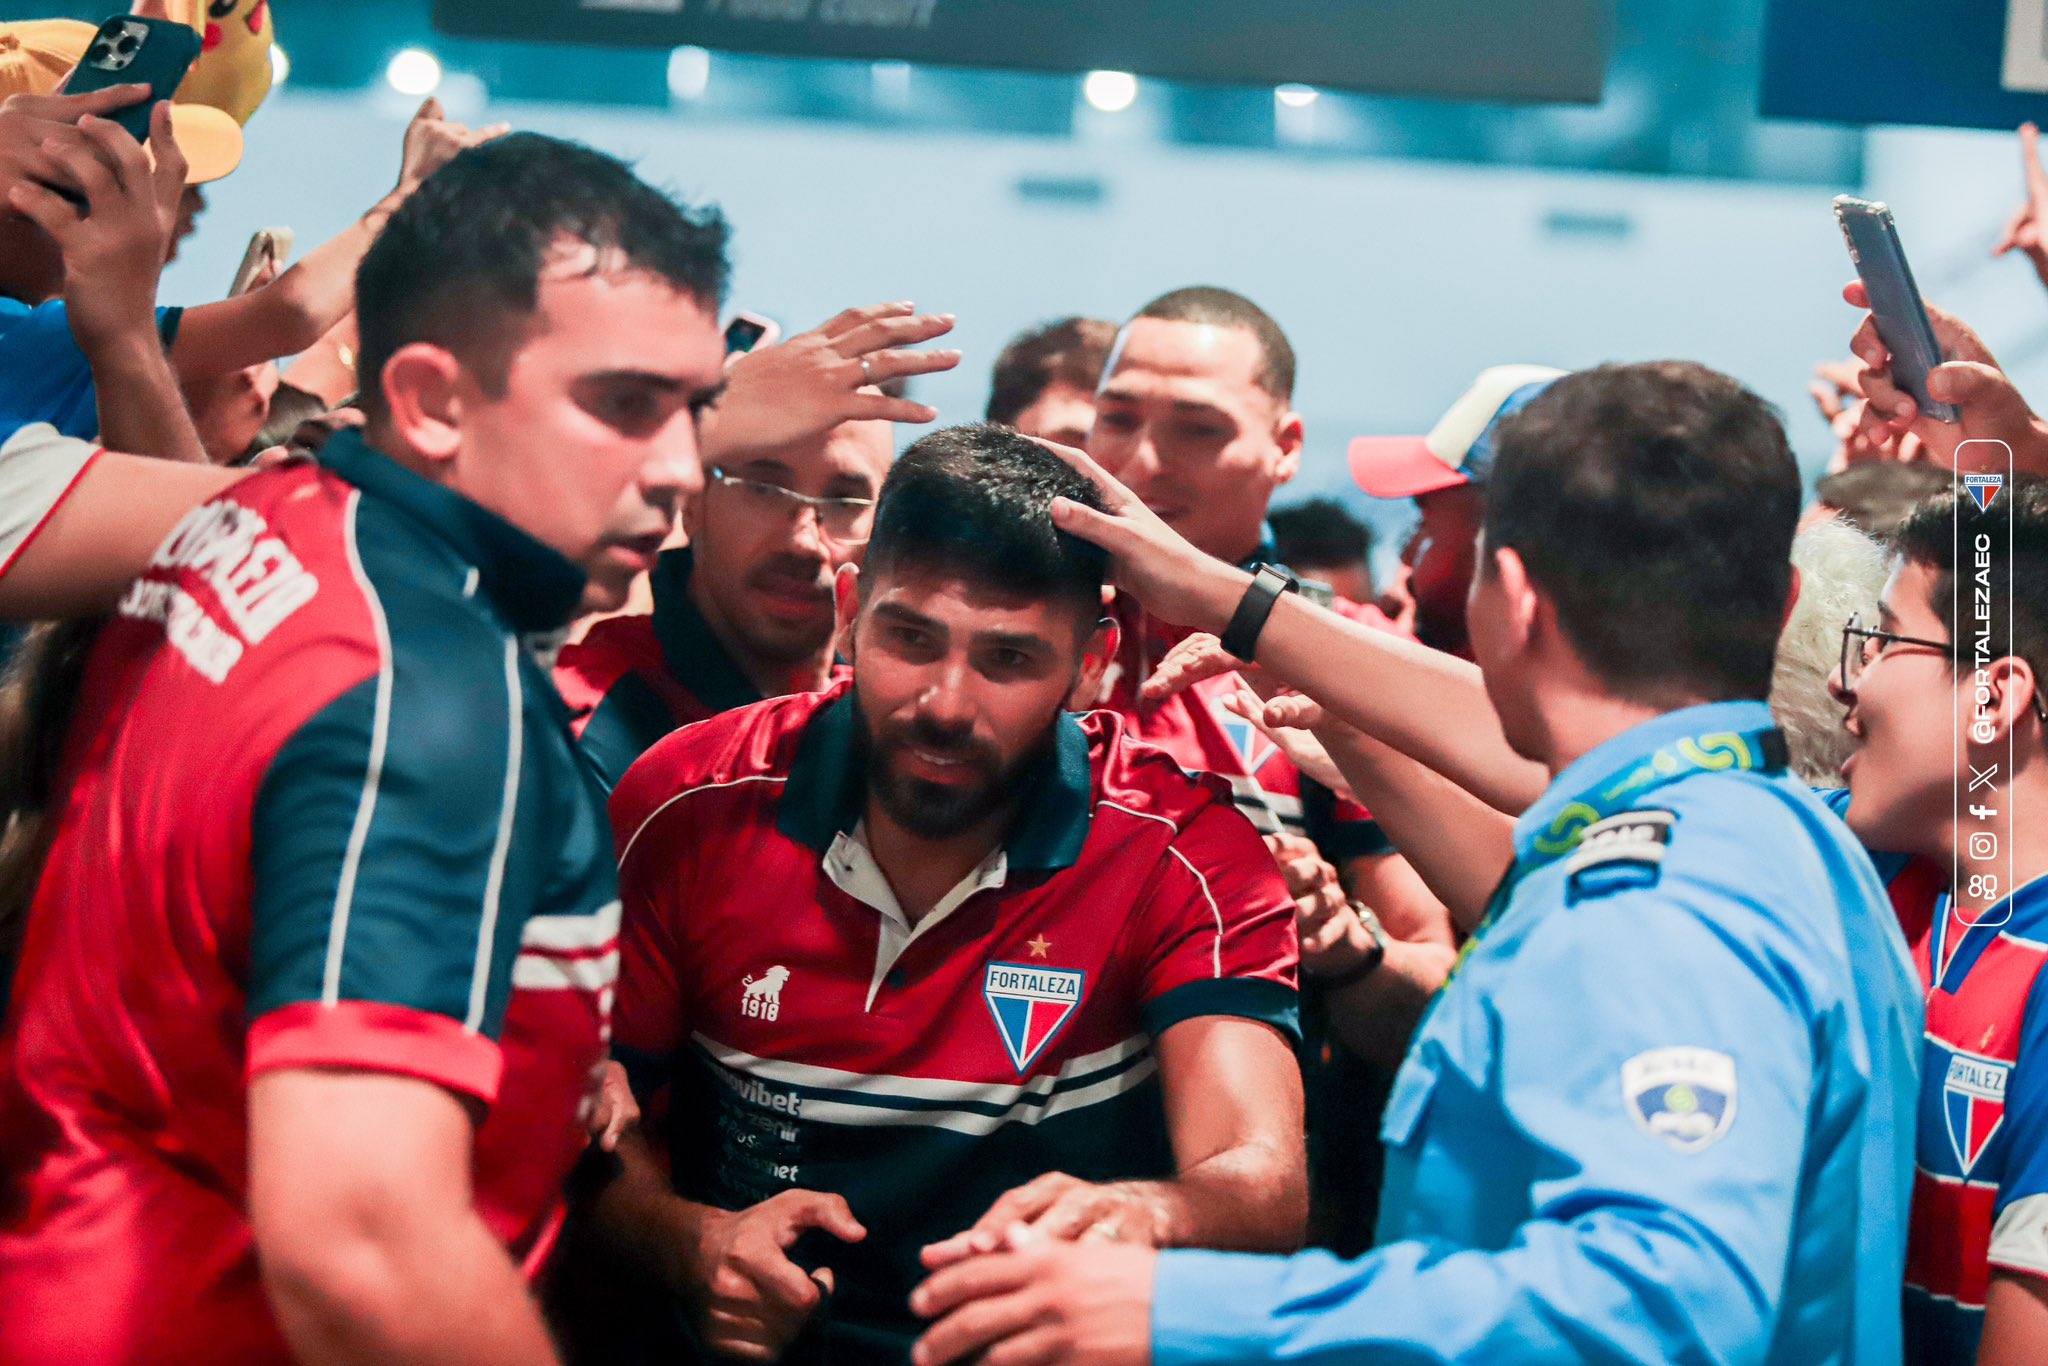 Romero passando em super recepção de torcedores no Aeroporto de Fortaleza. Foto: Vinícius Palheta/FEC